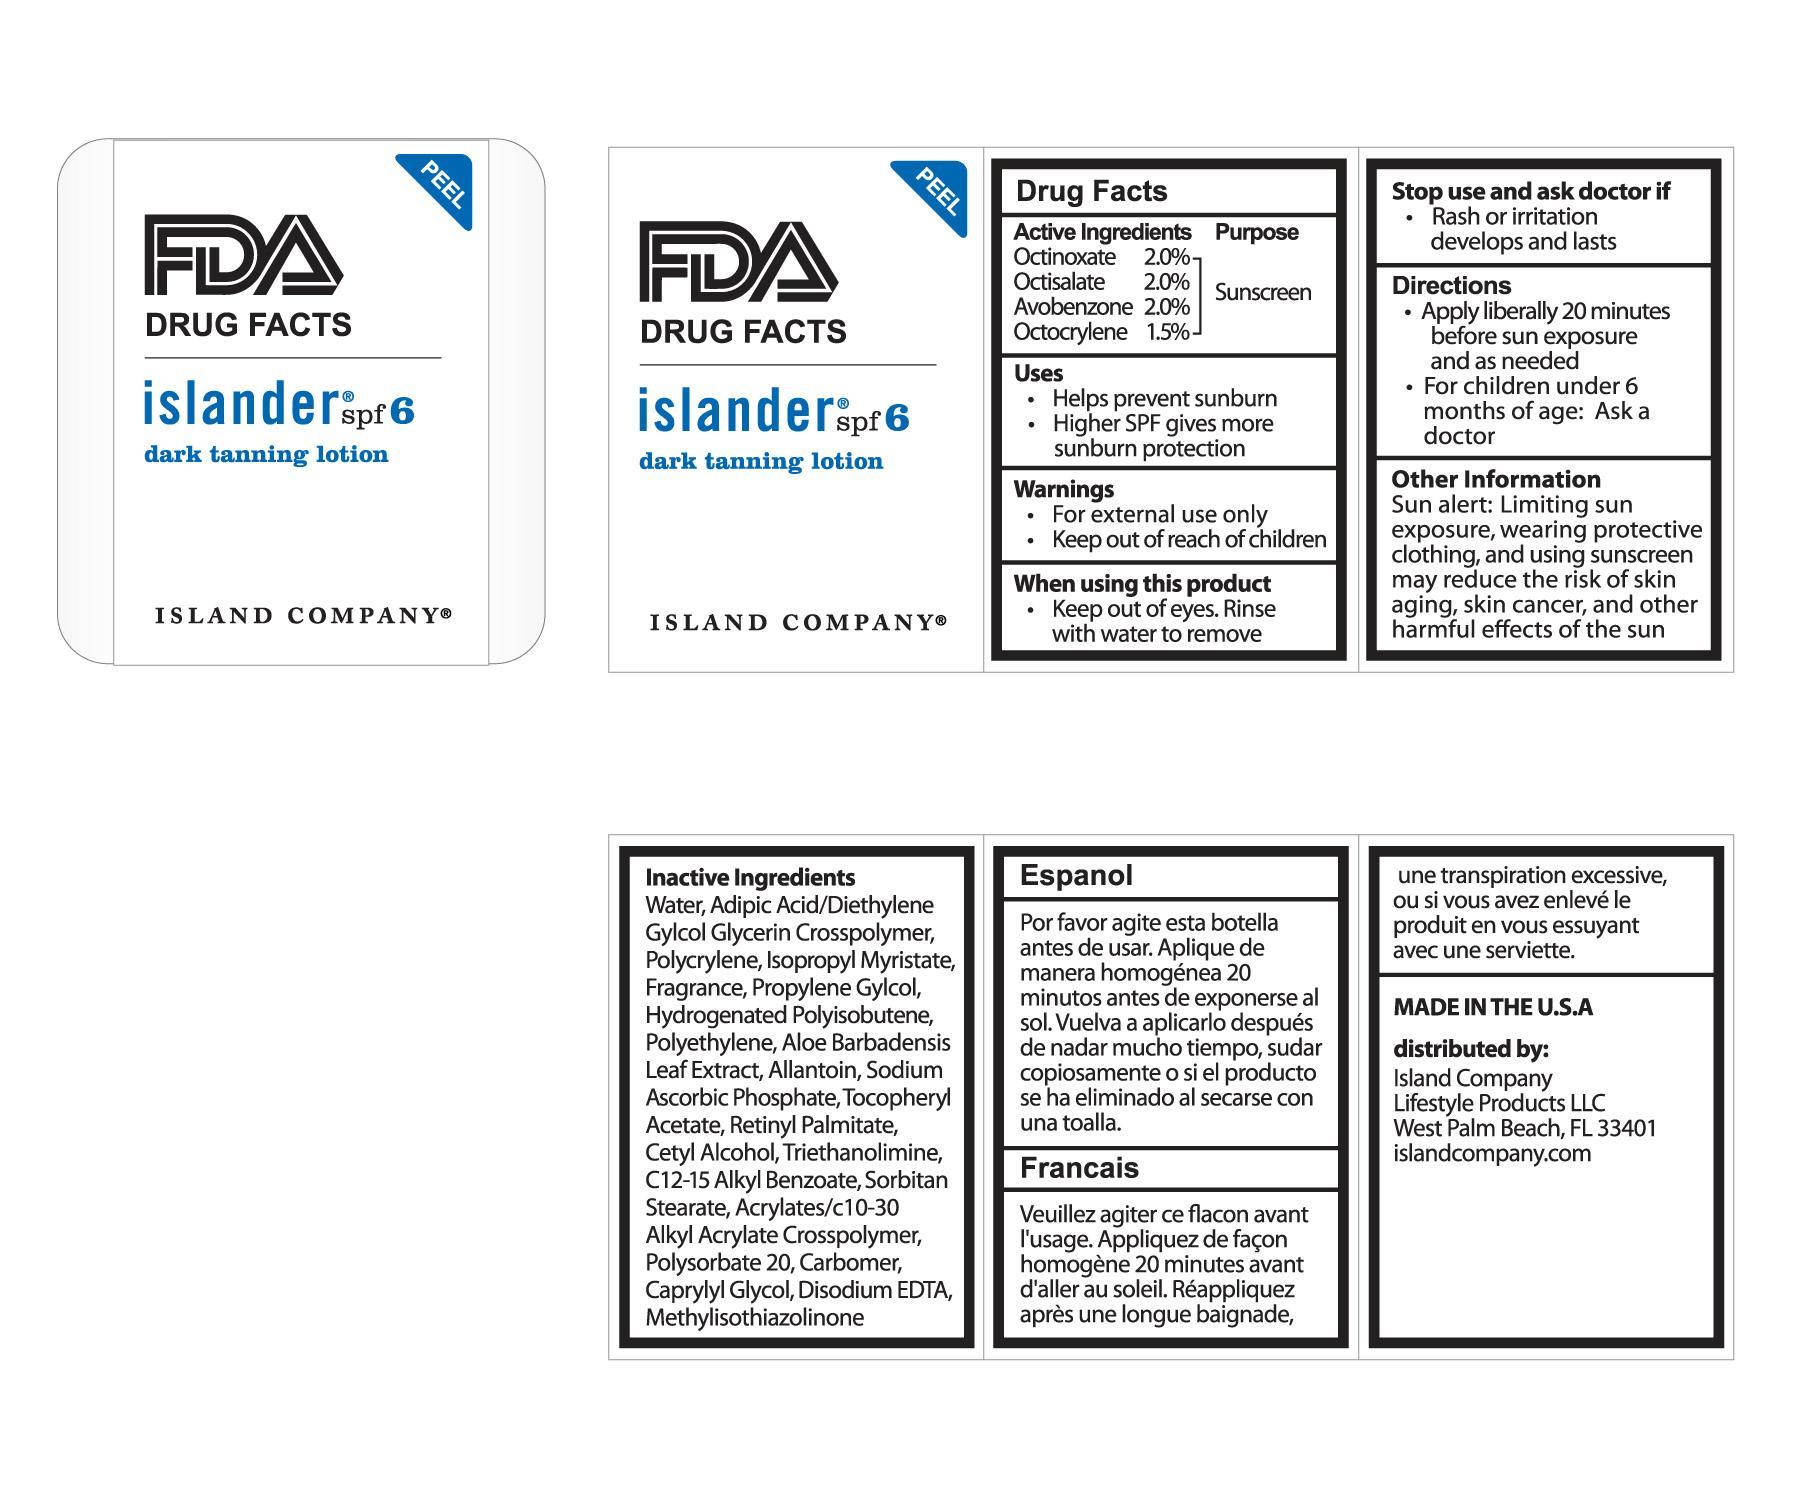 FDA Label